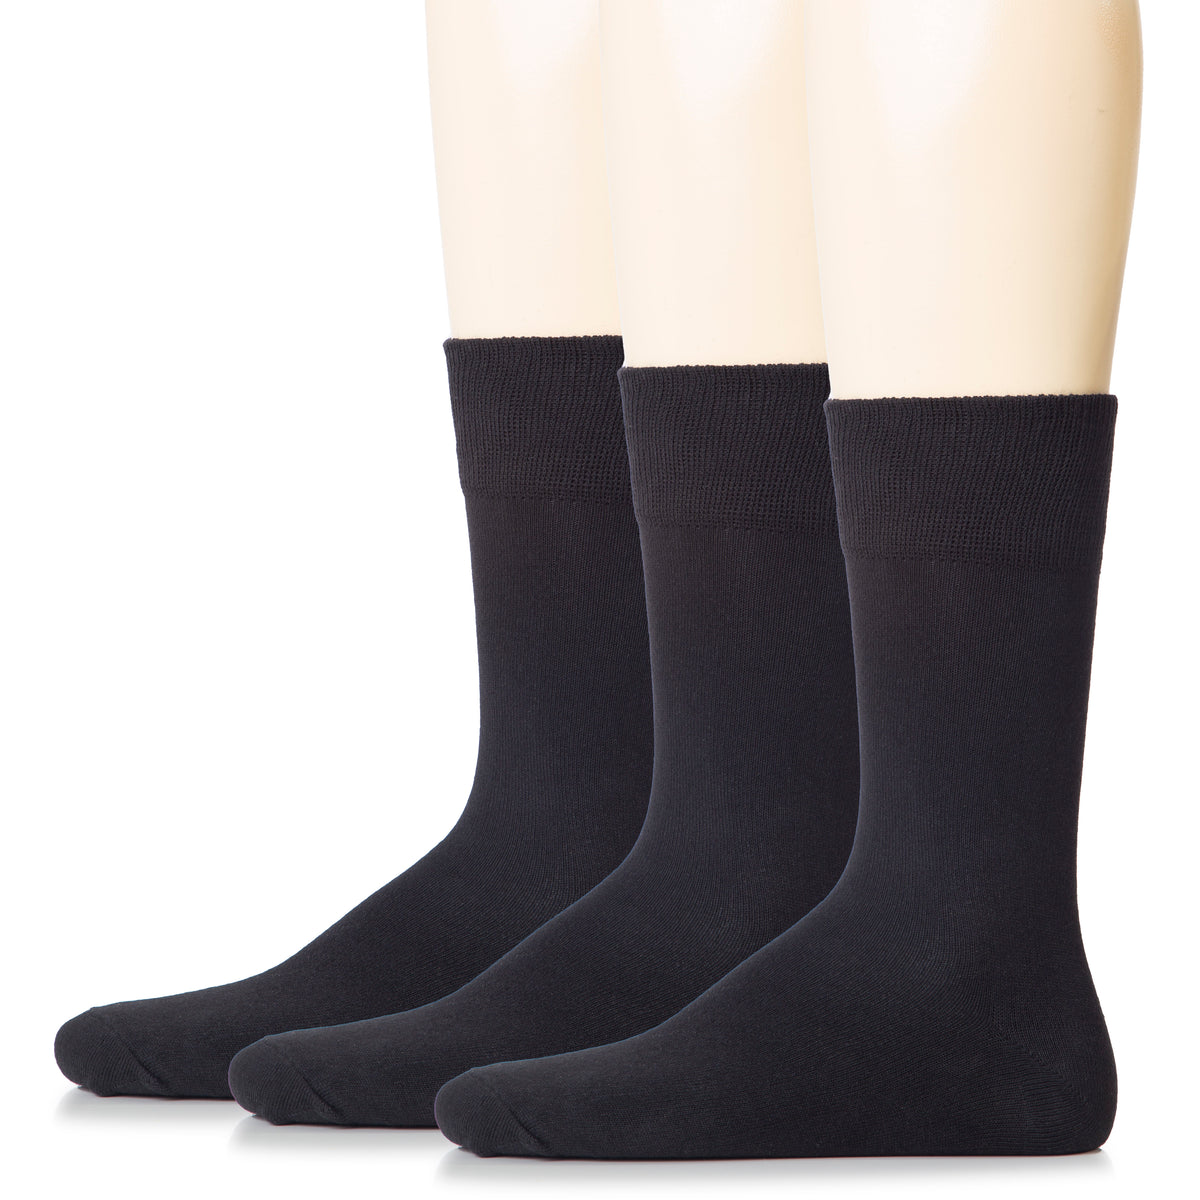 Hugh Ugoli Men Cotton Dress Socks XL / L / M / S Sizes, 3 Pairs | Shoe Size: 13-15 | Black